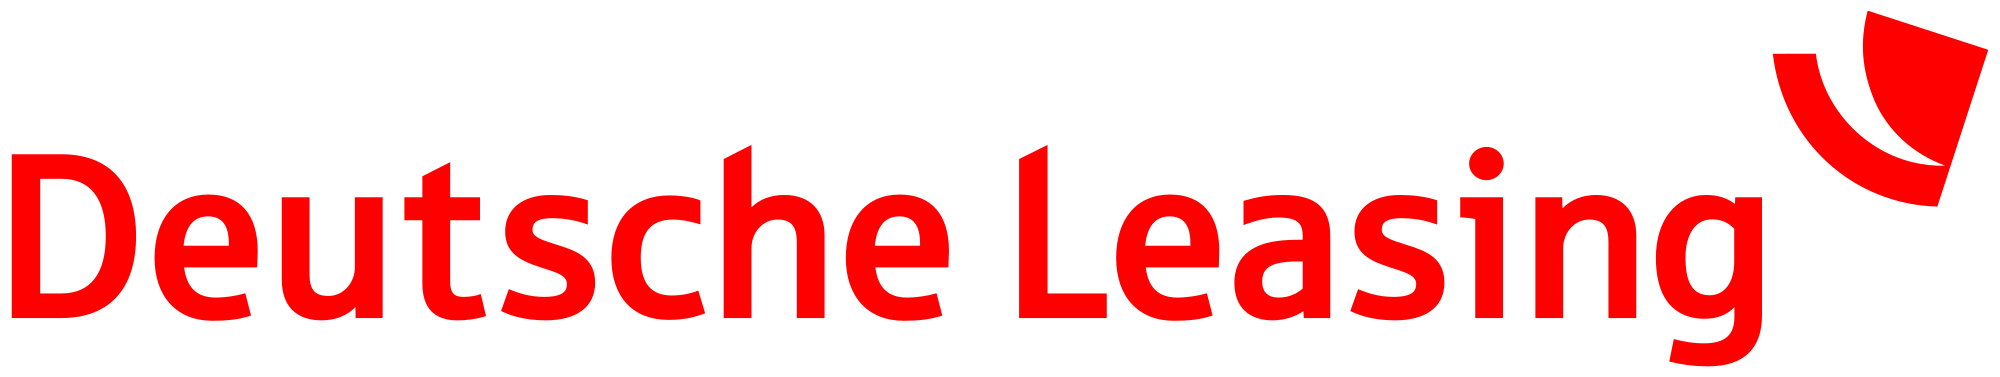 2000px-Deutsche_Leasing_logo.svg